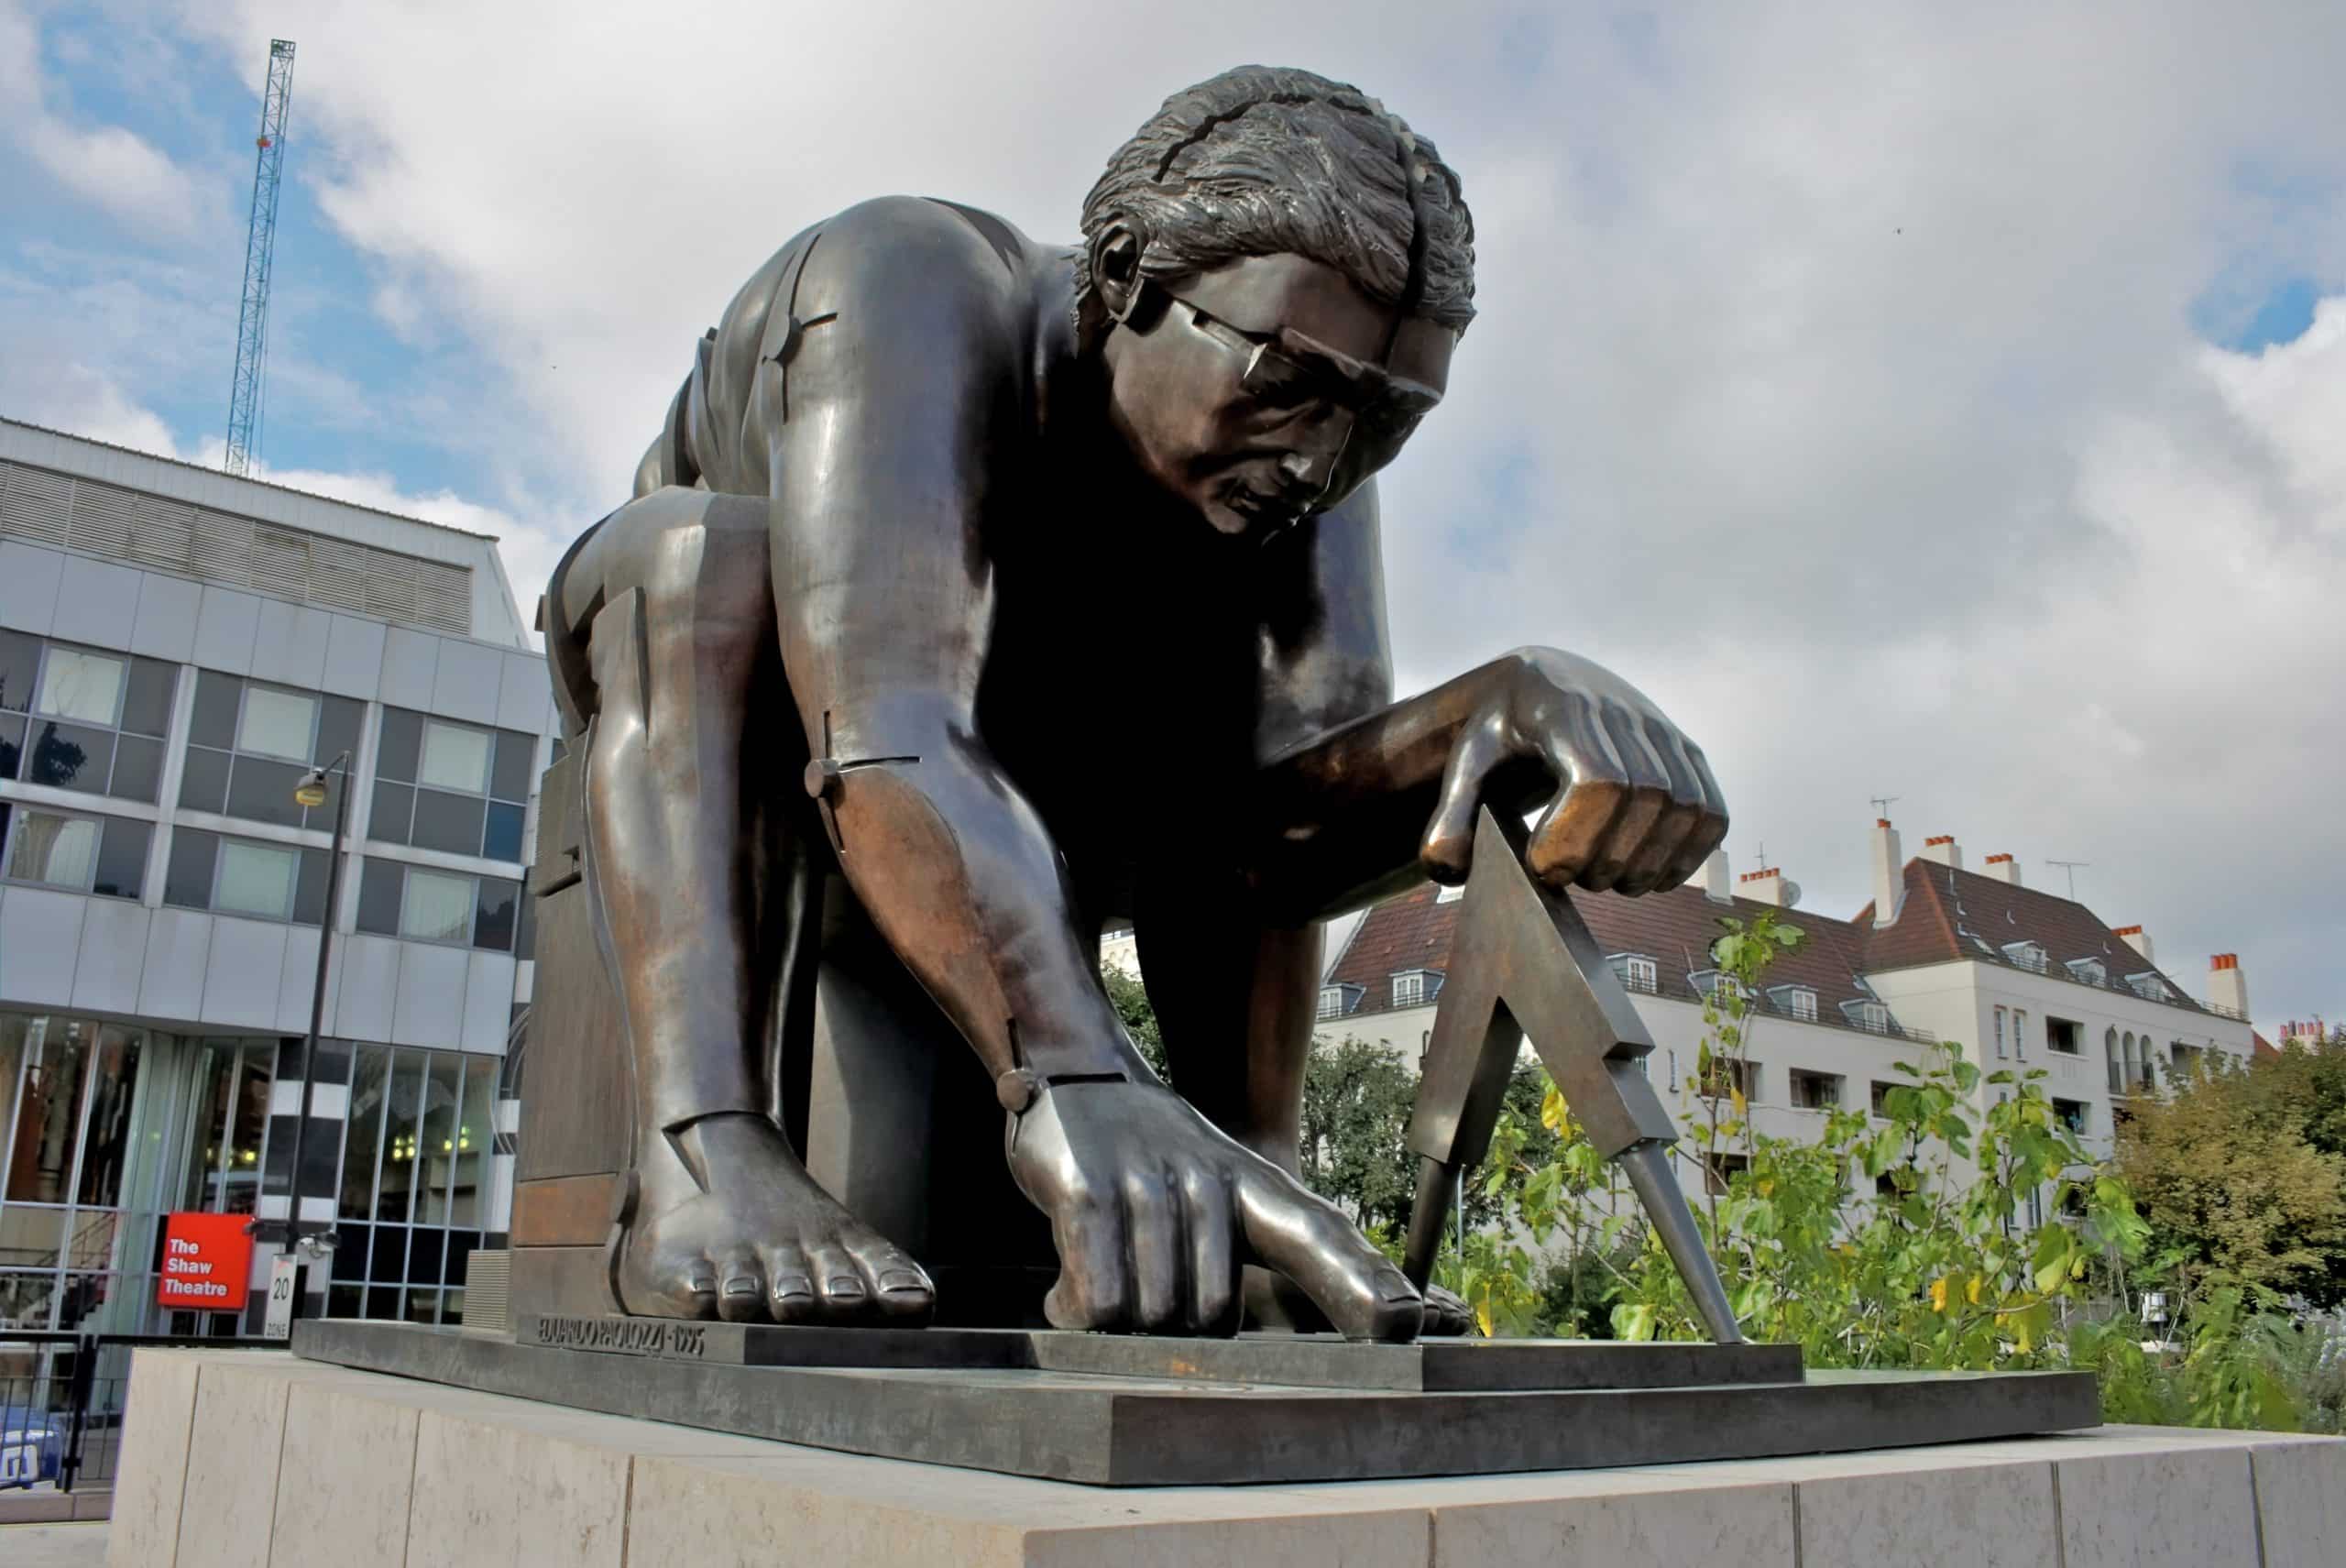 Aus dem Englischen übersetzt - Newton, manchmal auch Newton nach Blake genannt, ist ein Werk des Bildhauers Eduardo Paolozzi aus dem Jahr 1995. Die große Bronzeskulptur ist auf einem hohen Sockel auf der Piazza vor der British Library in London ausgestellt.